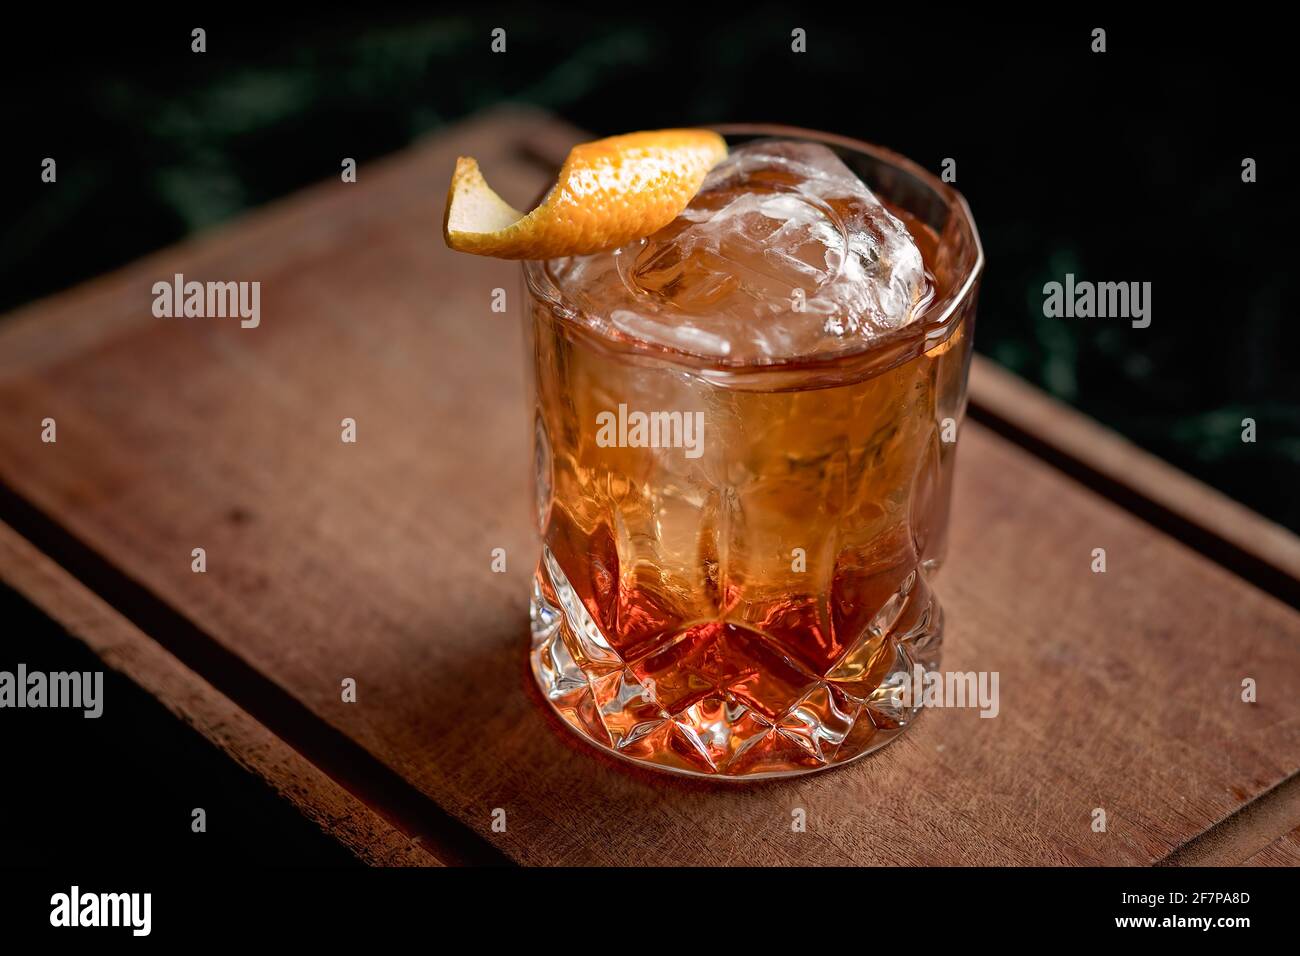 Un cocktail classique à l'ancienne servi avec une boule de glace dans un magnifique verre de roche, avec une pelure d'orange comme garniture. Banque D'Images